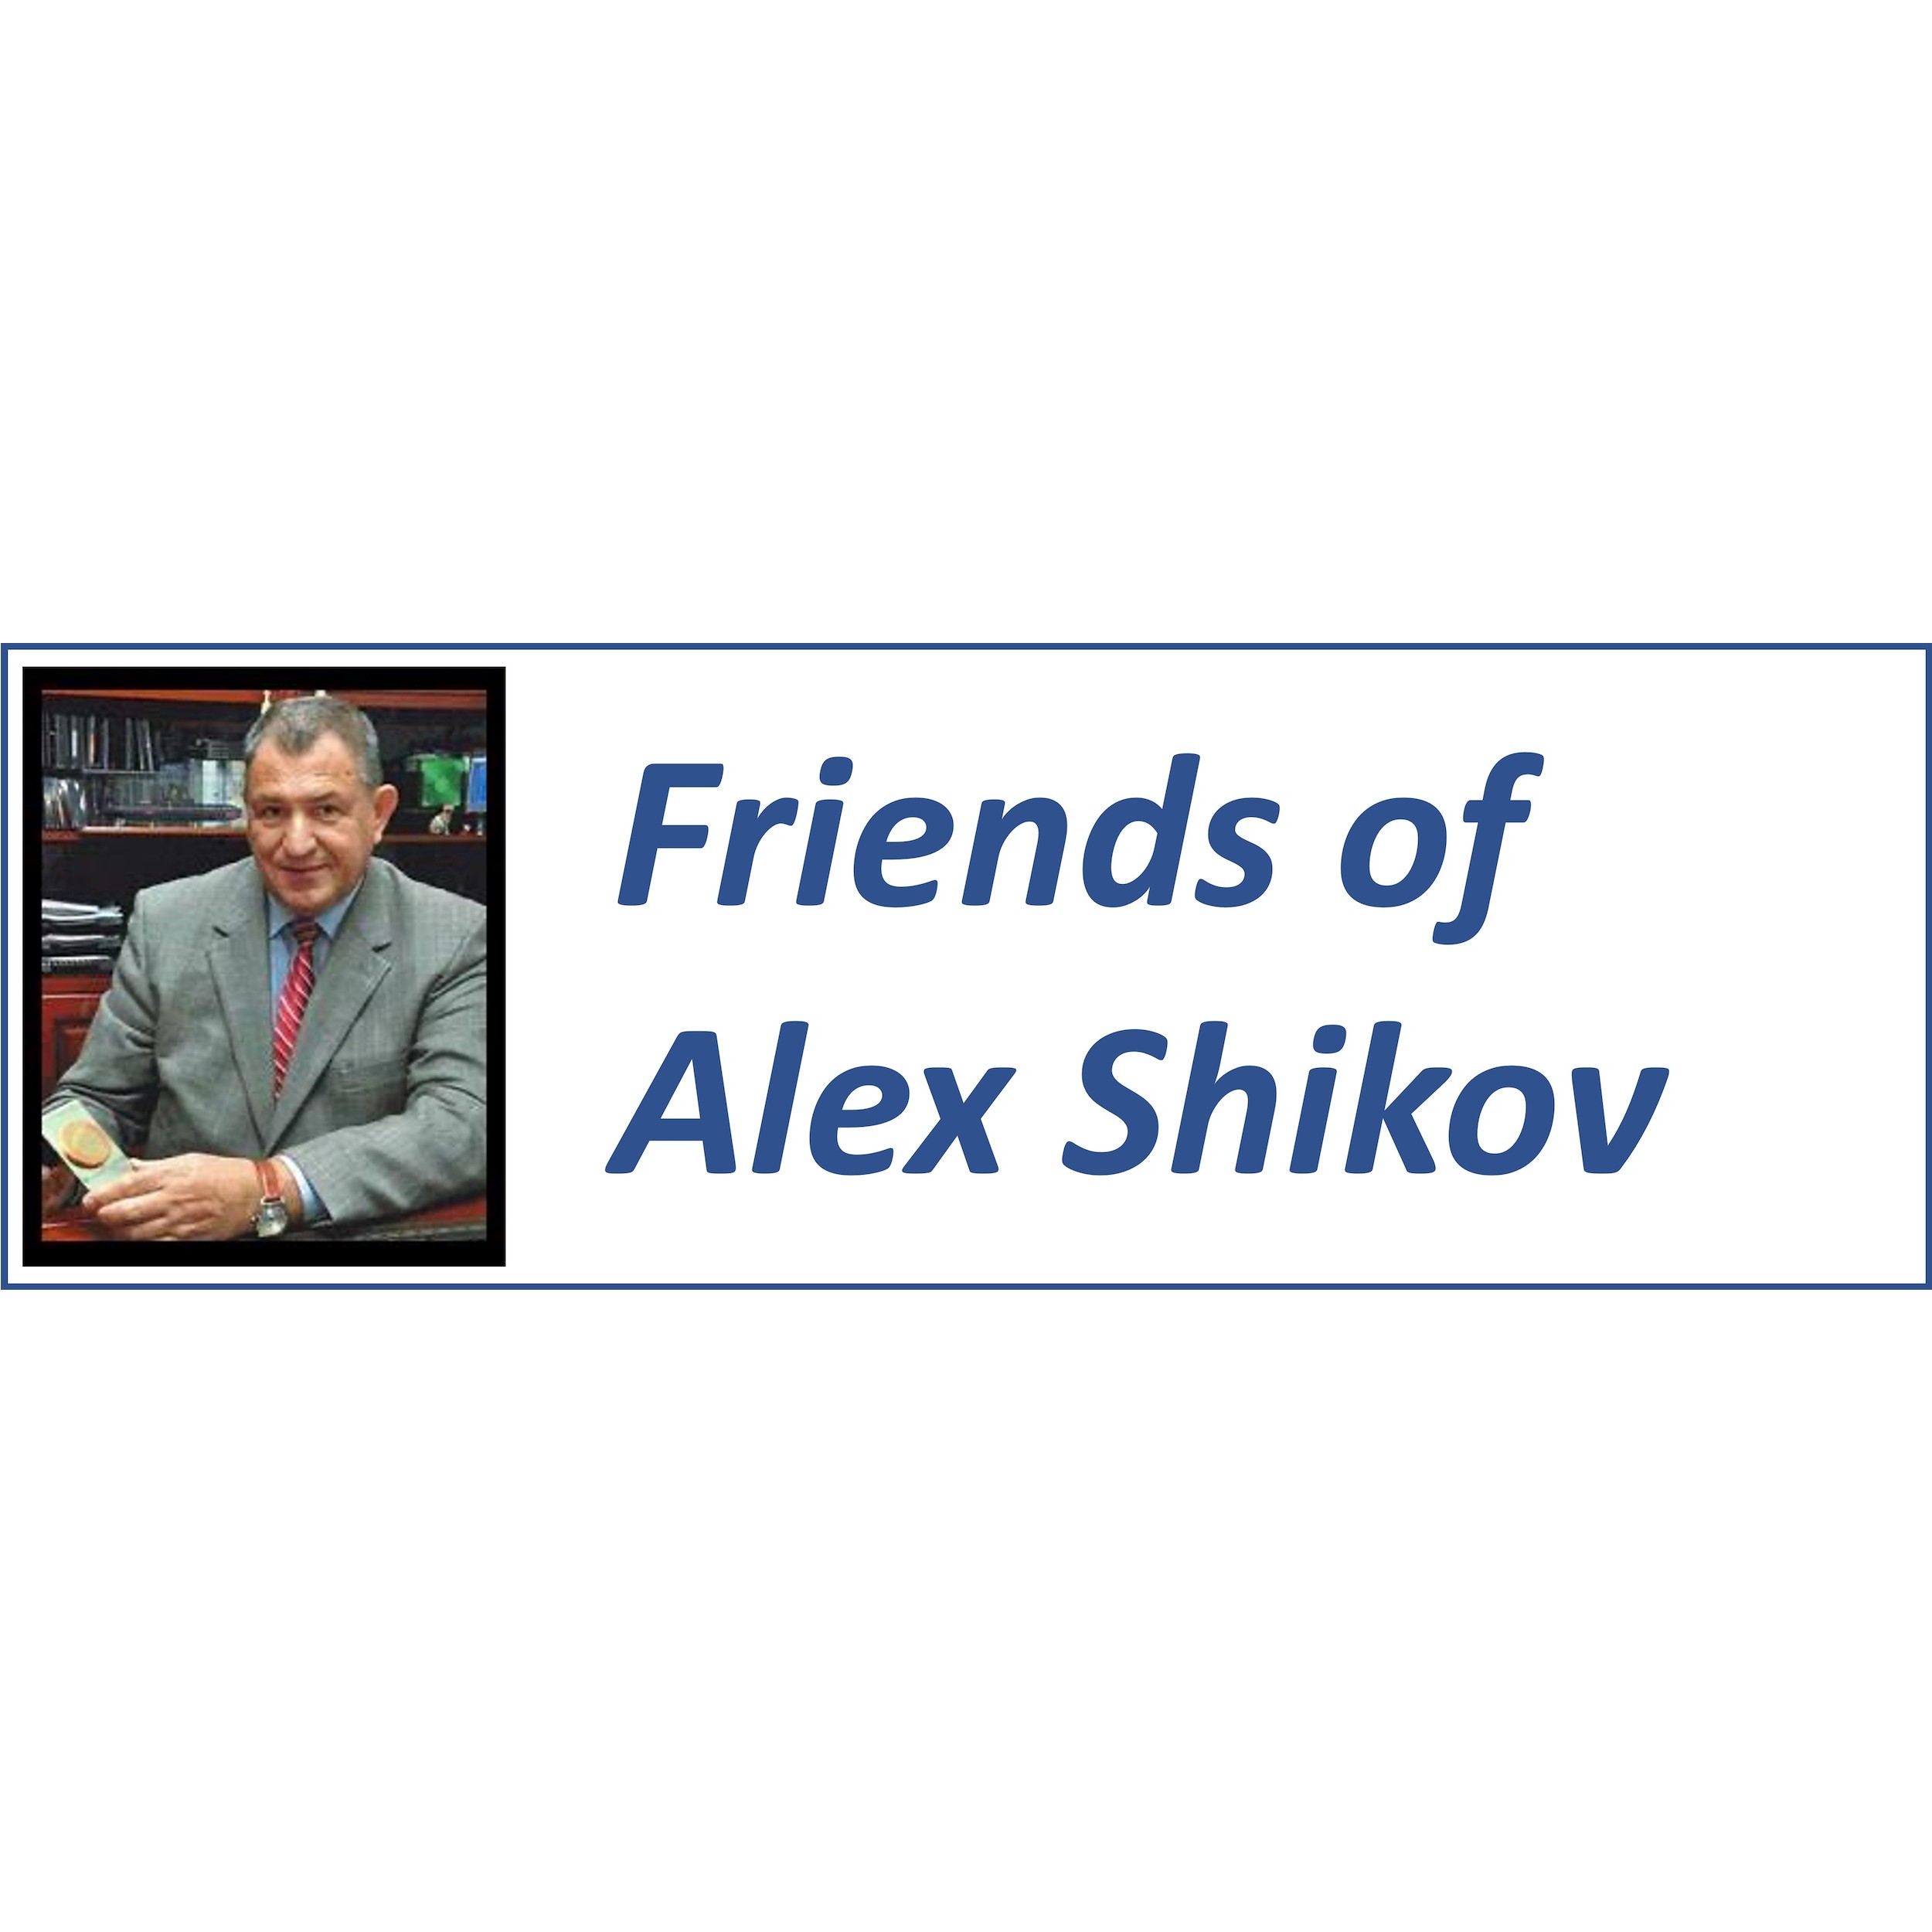 Friends of Alex Shikov